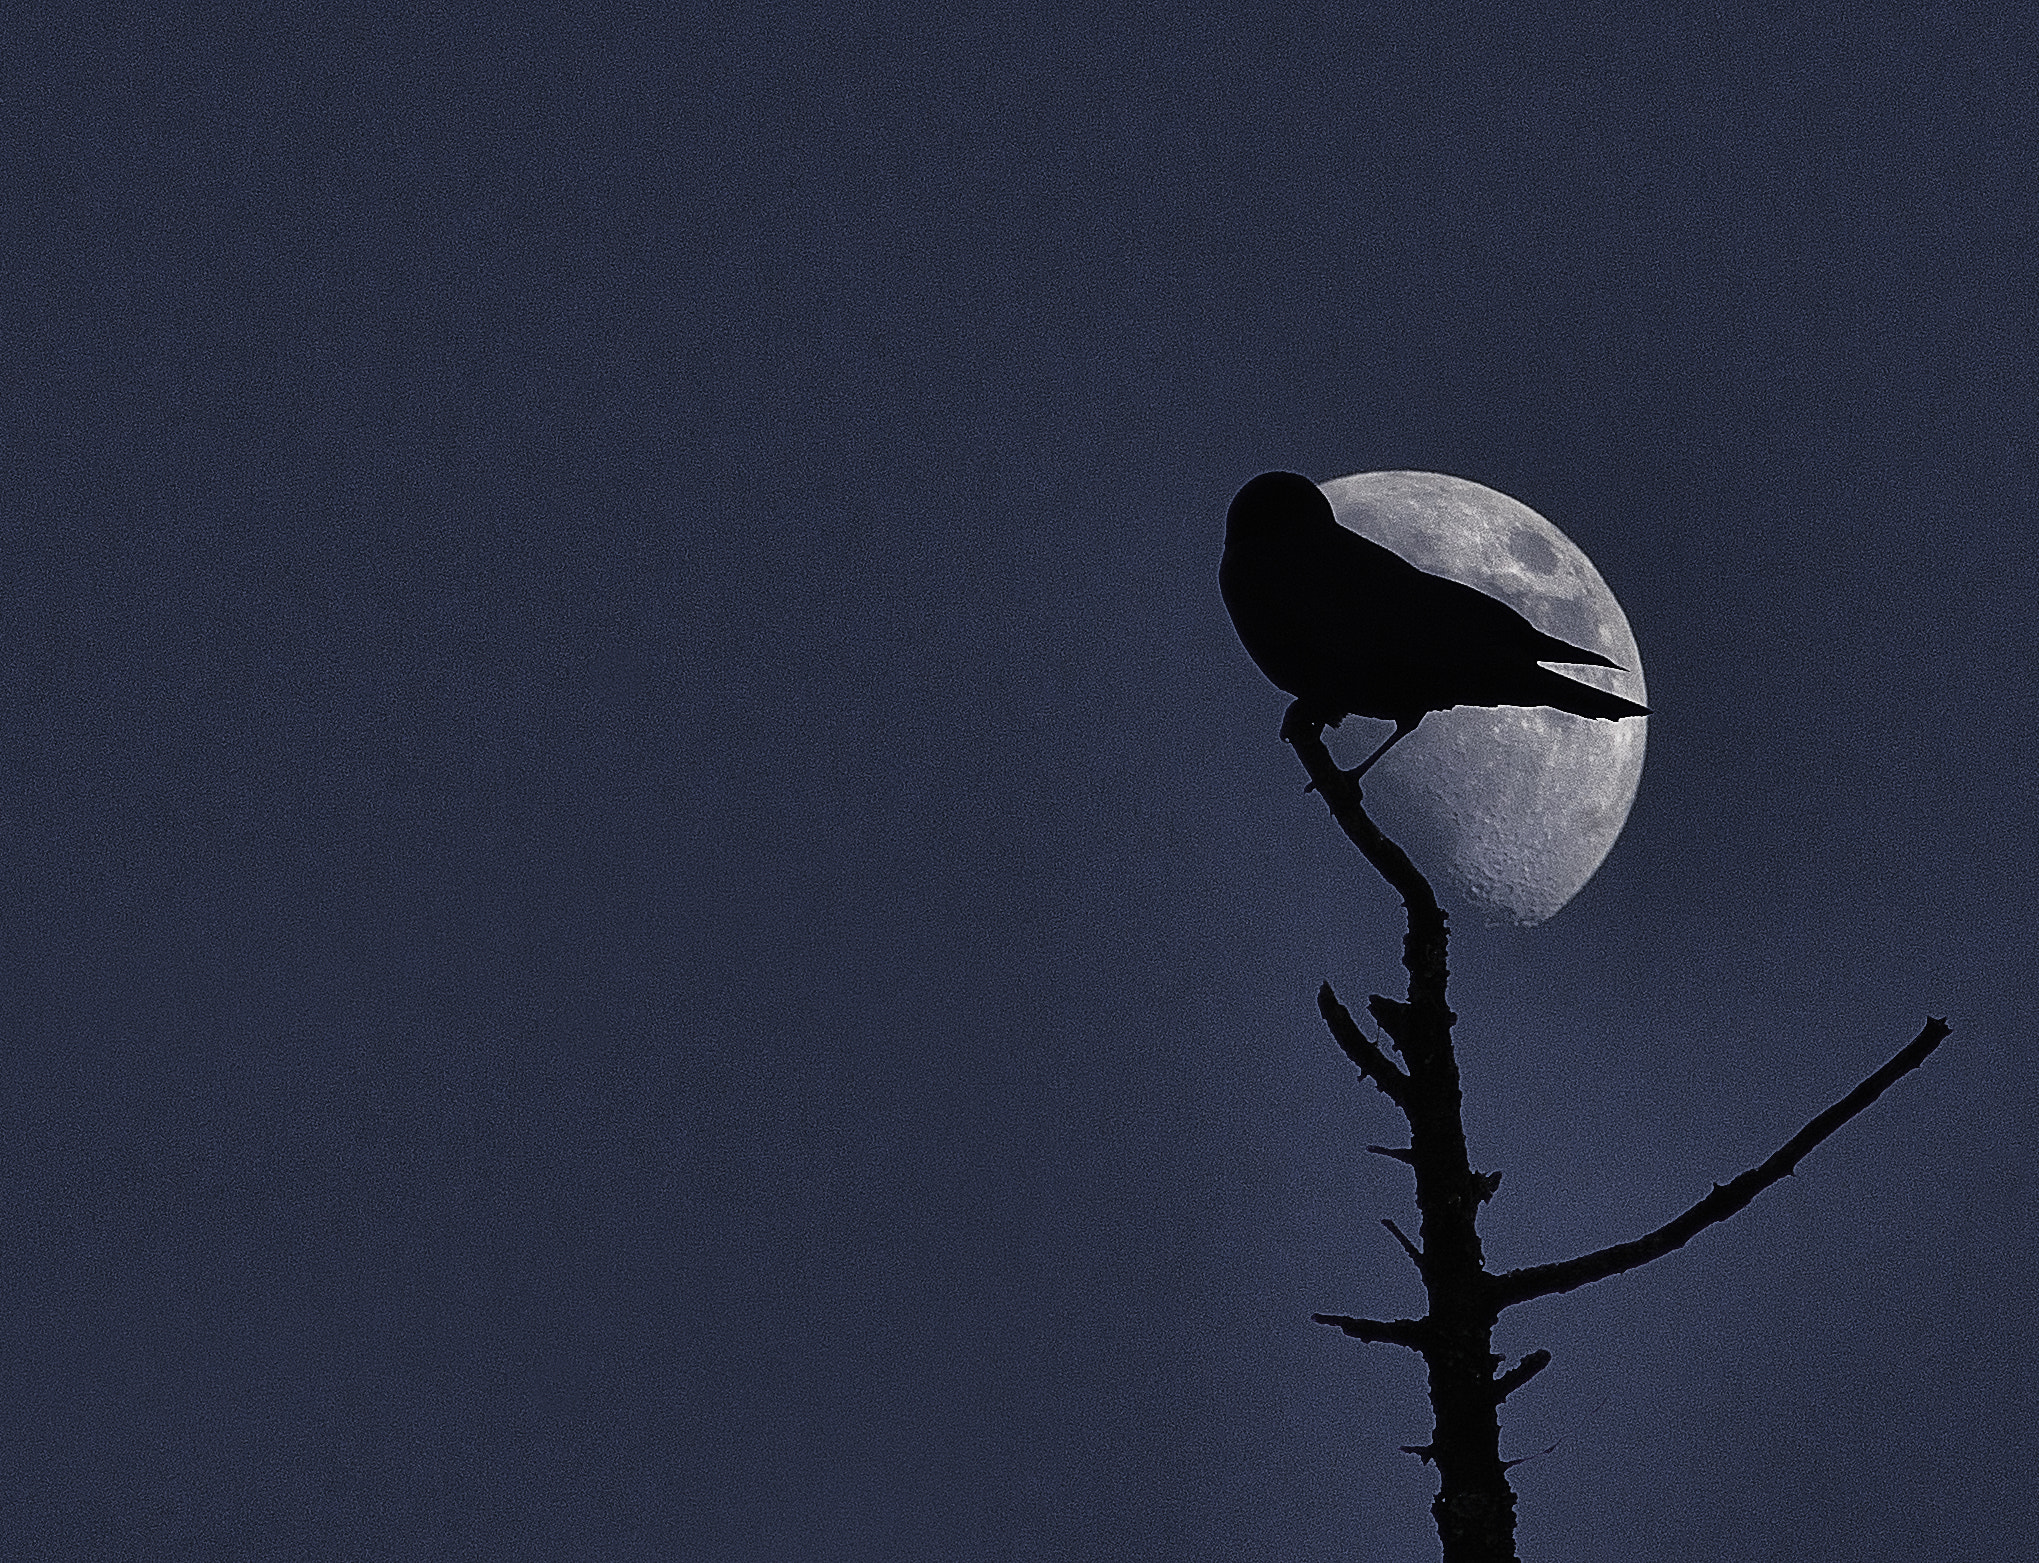 Sony Alpha DSLR-A700 sample photo. Crow moon photography